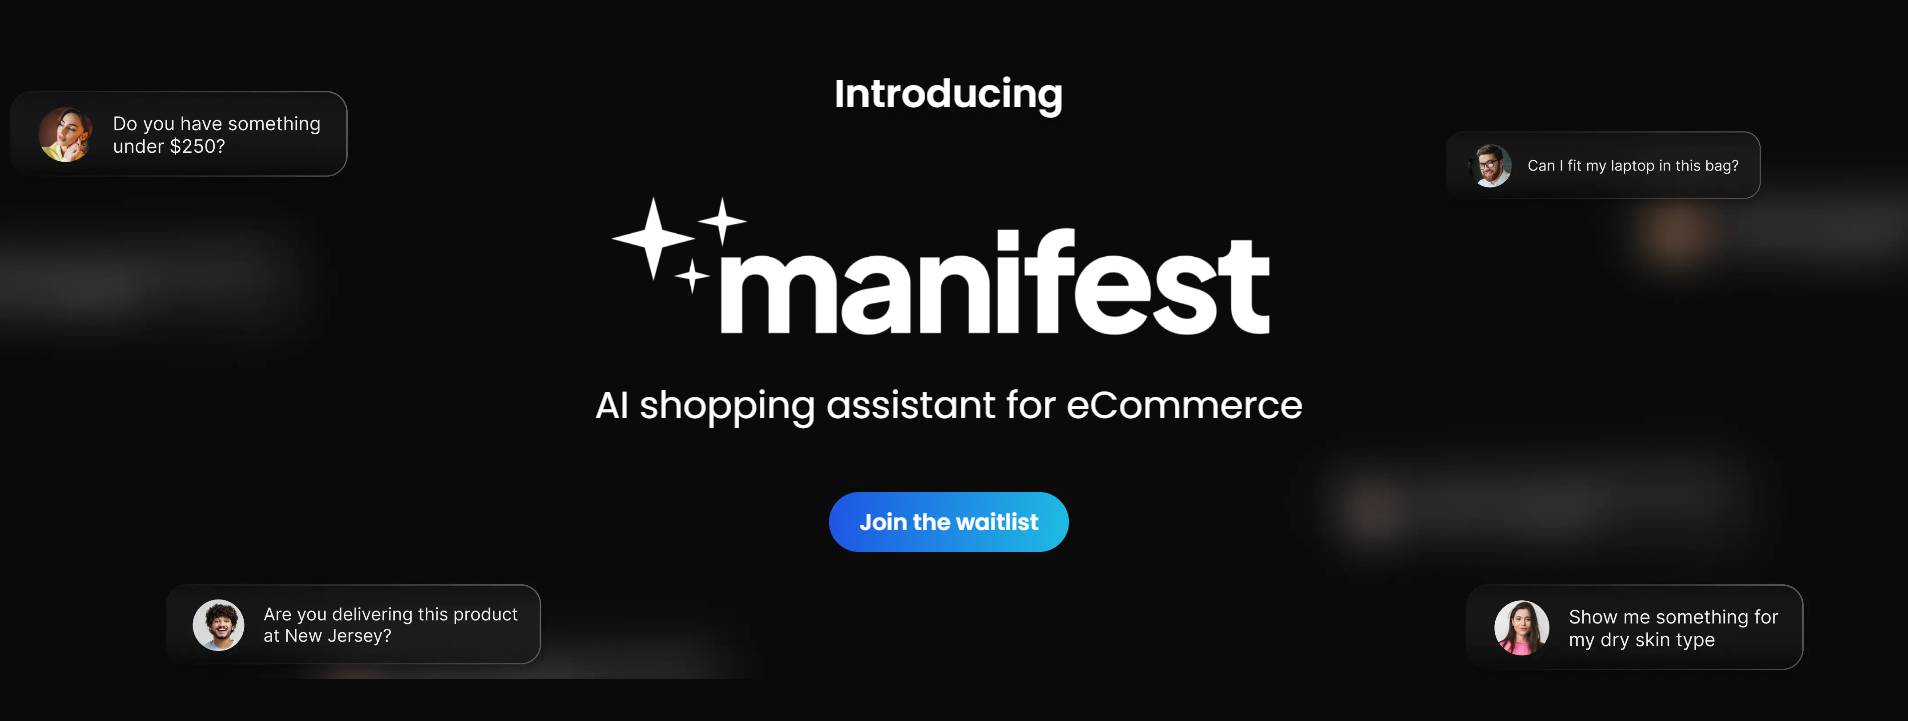 MANIFEST AI - Une application Shopify pour aider les acheteurs à trouver des produits et des informations pertinents